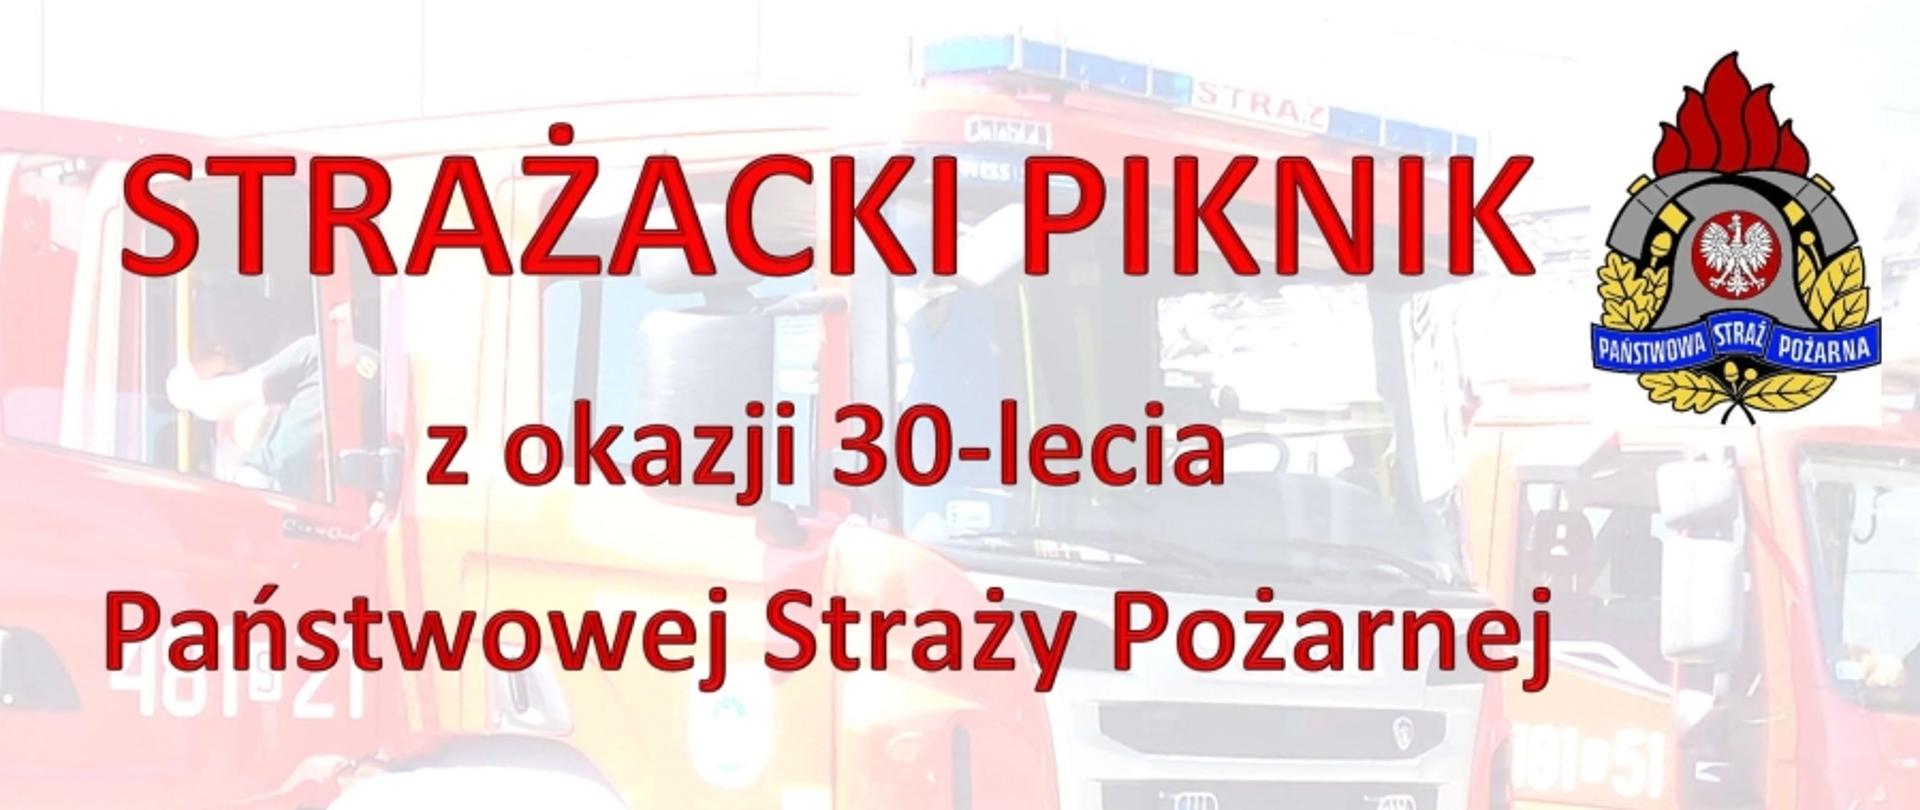 Plakat Piknik Strażacki